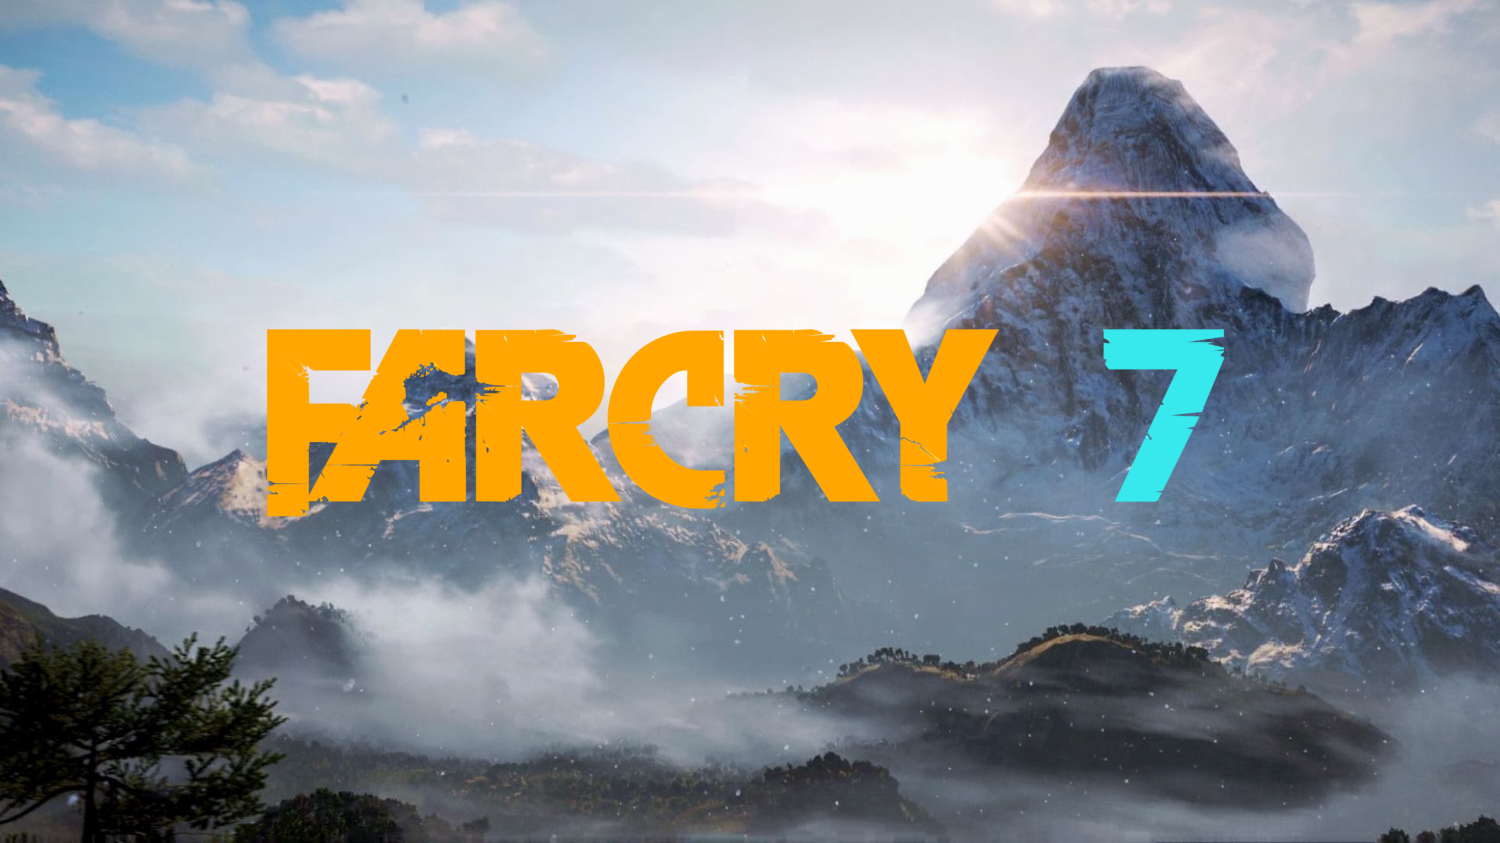 Far Cry 7 